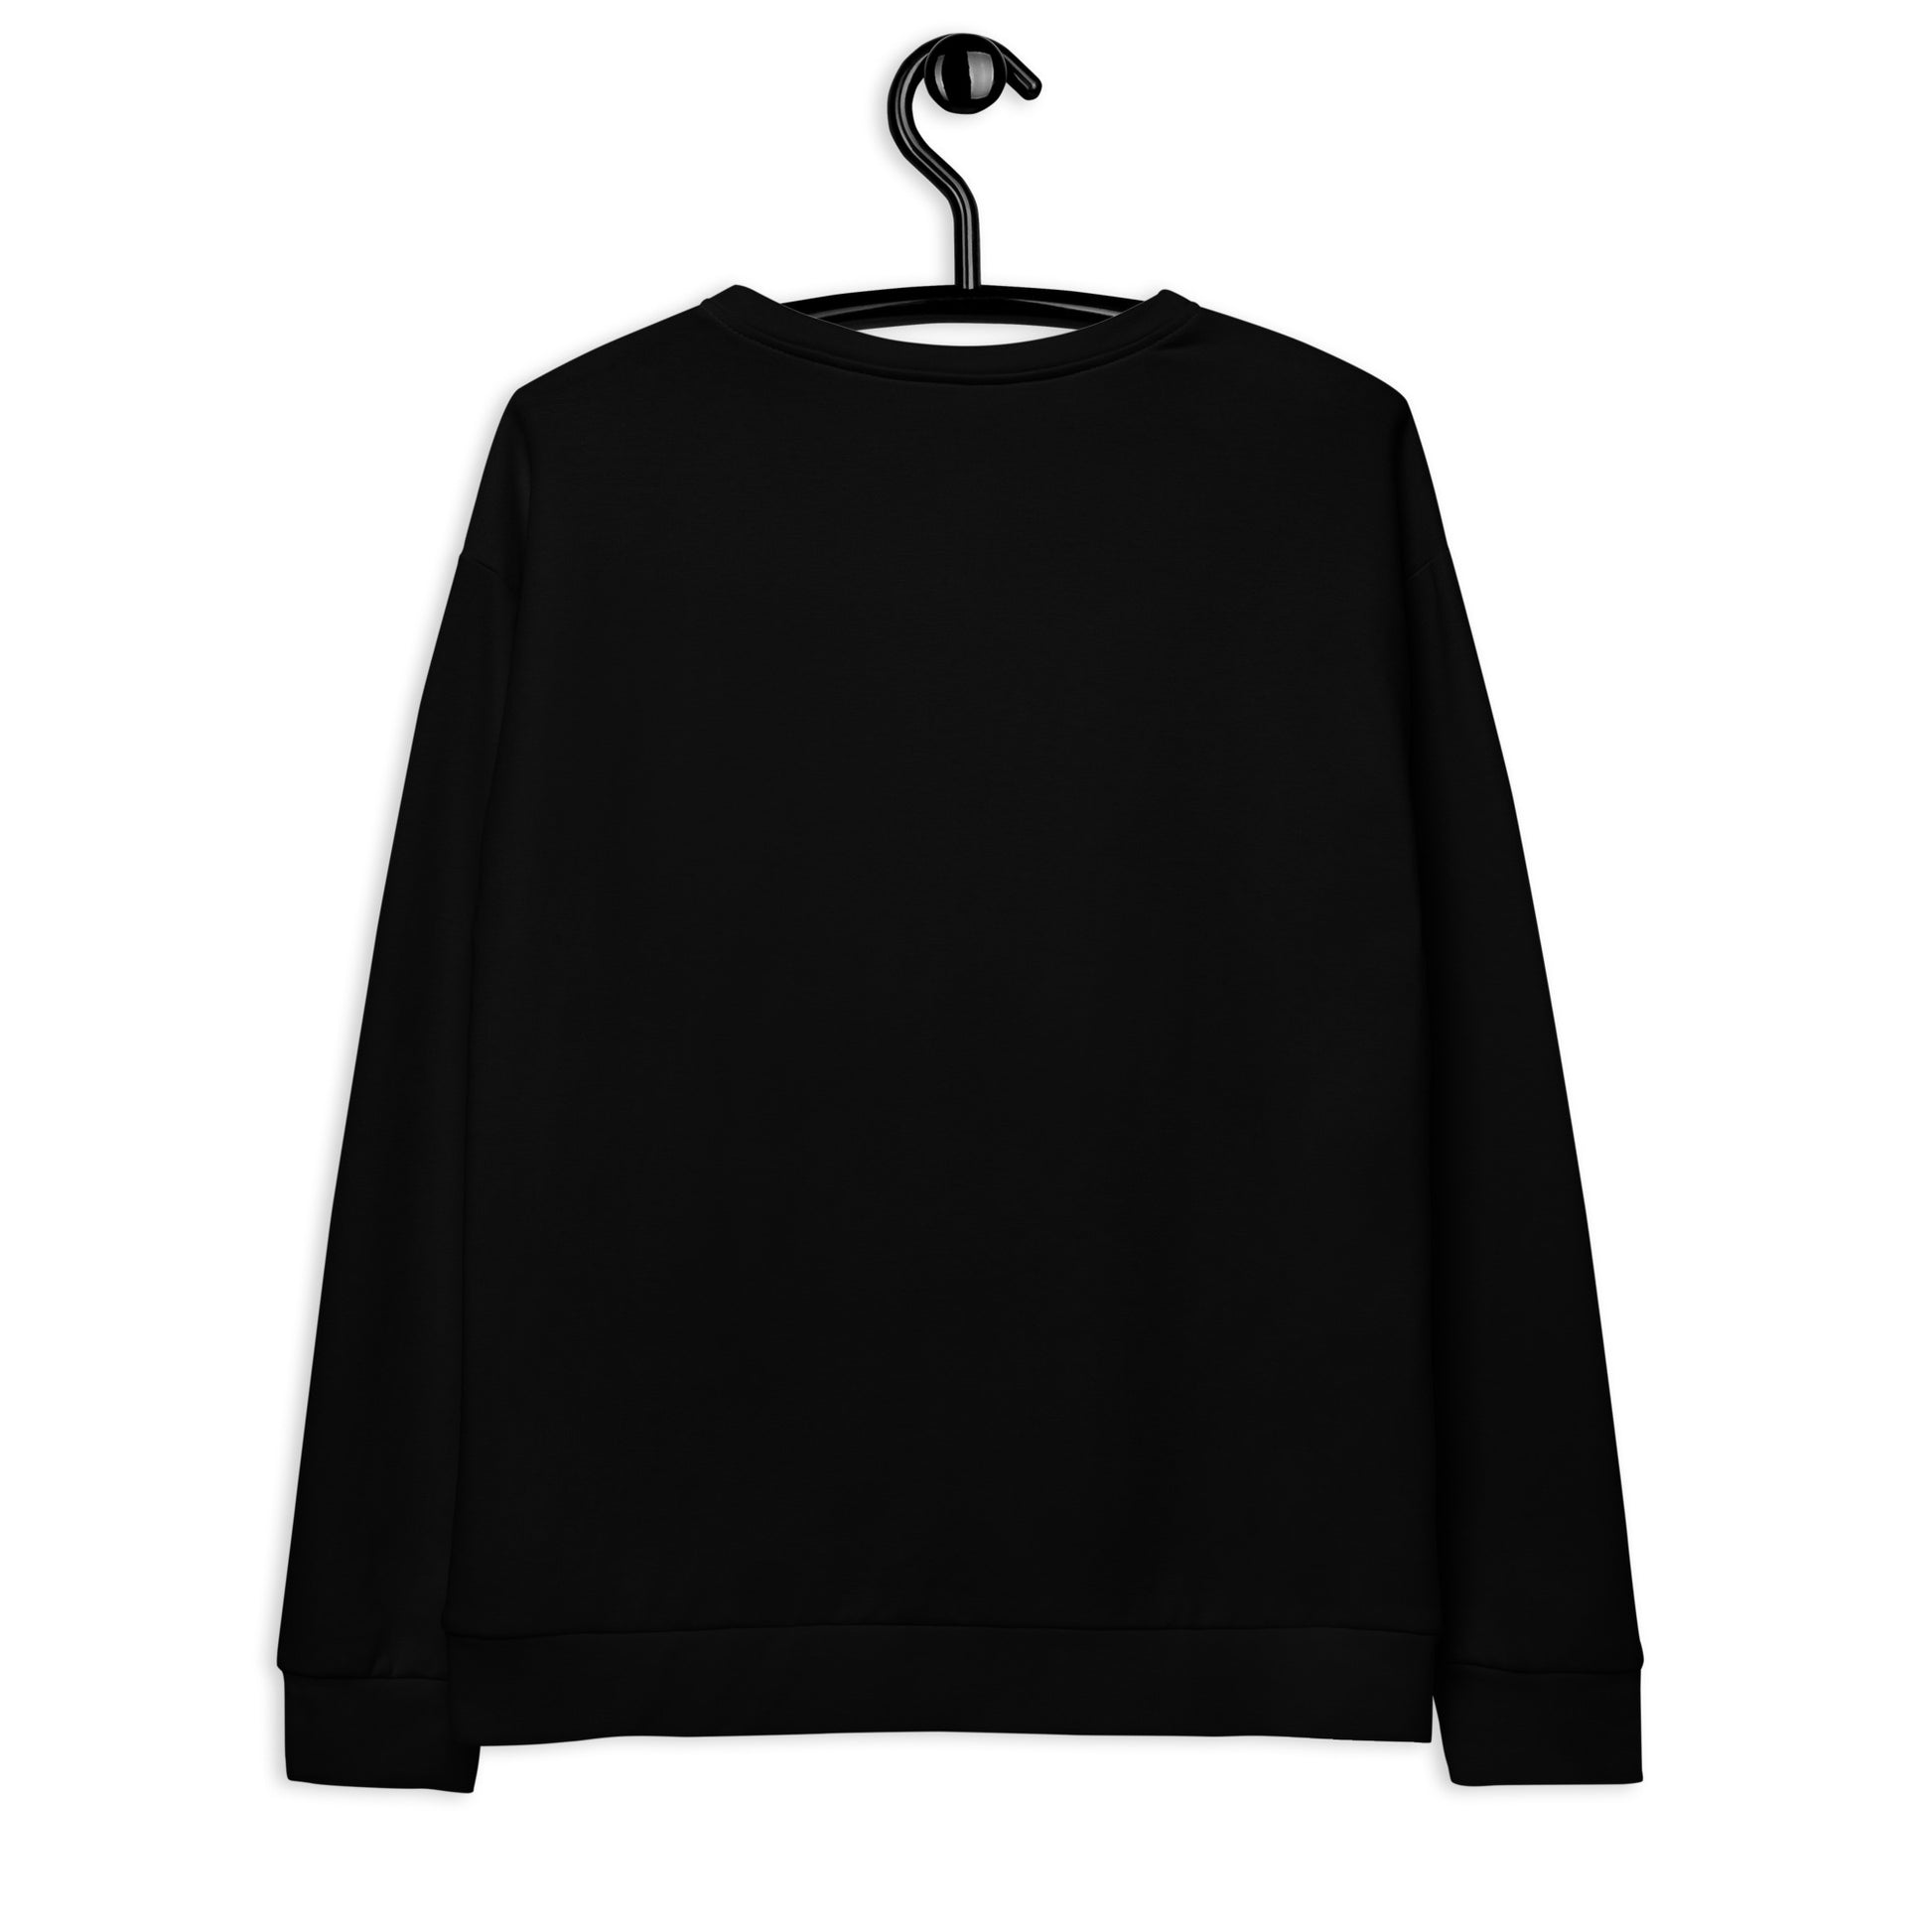 MAGICAT black (just cat) - Unisex Sweatshirt